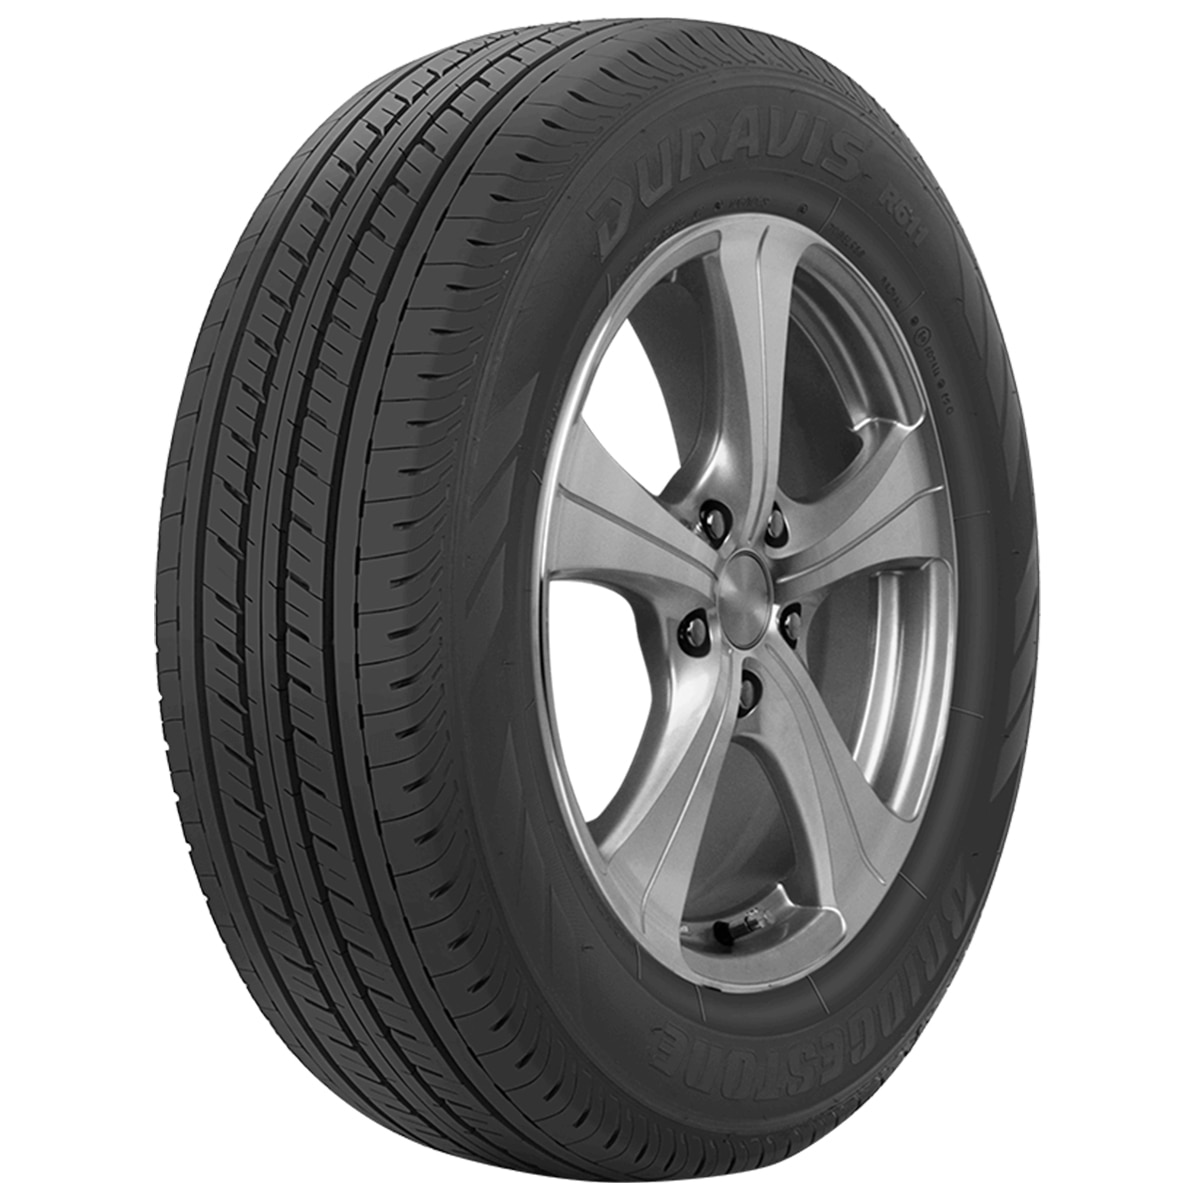 Bridgestone Tyre